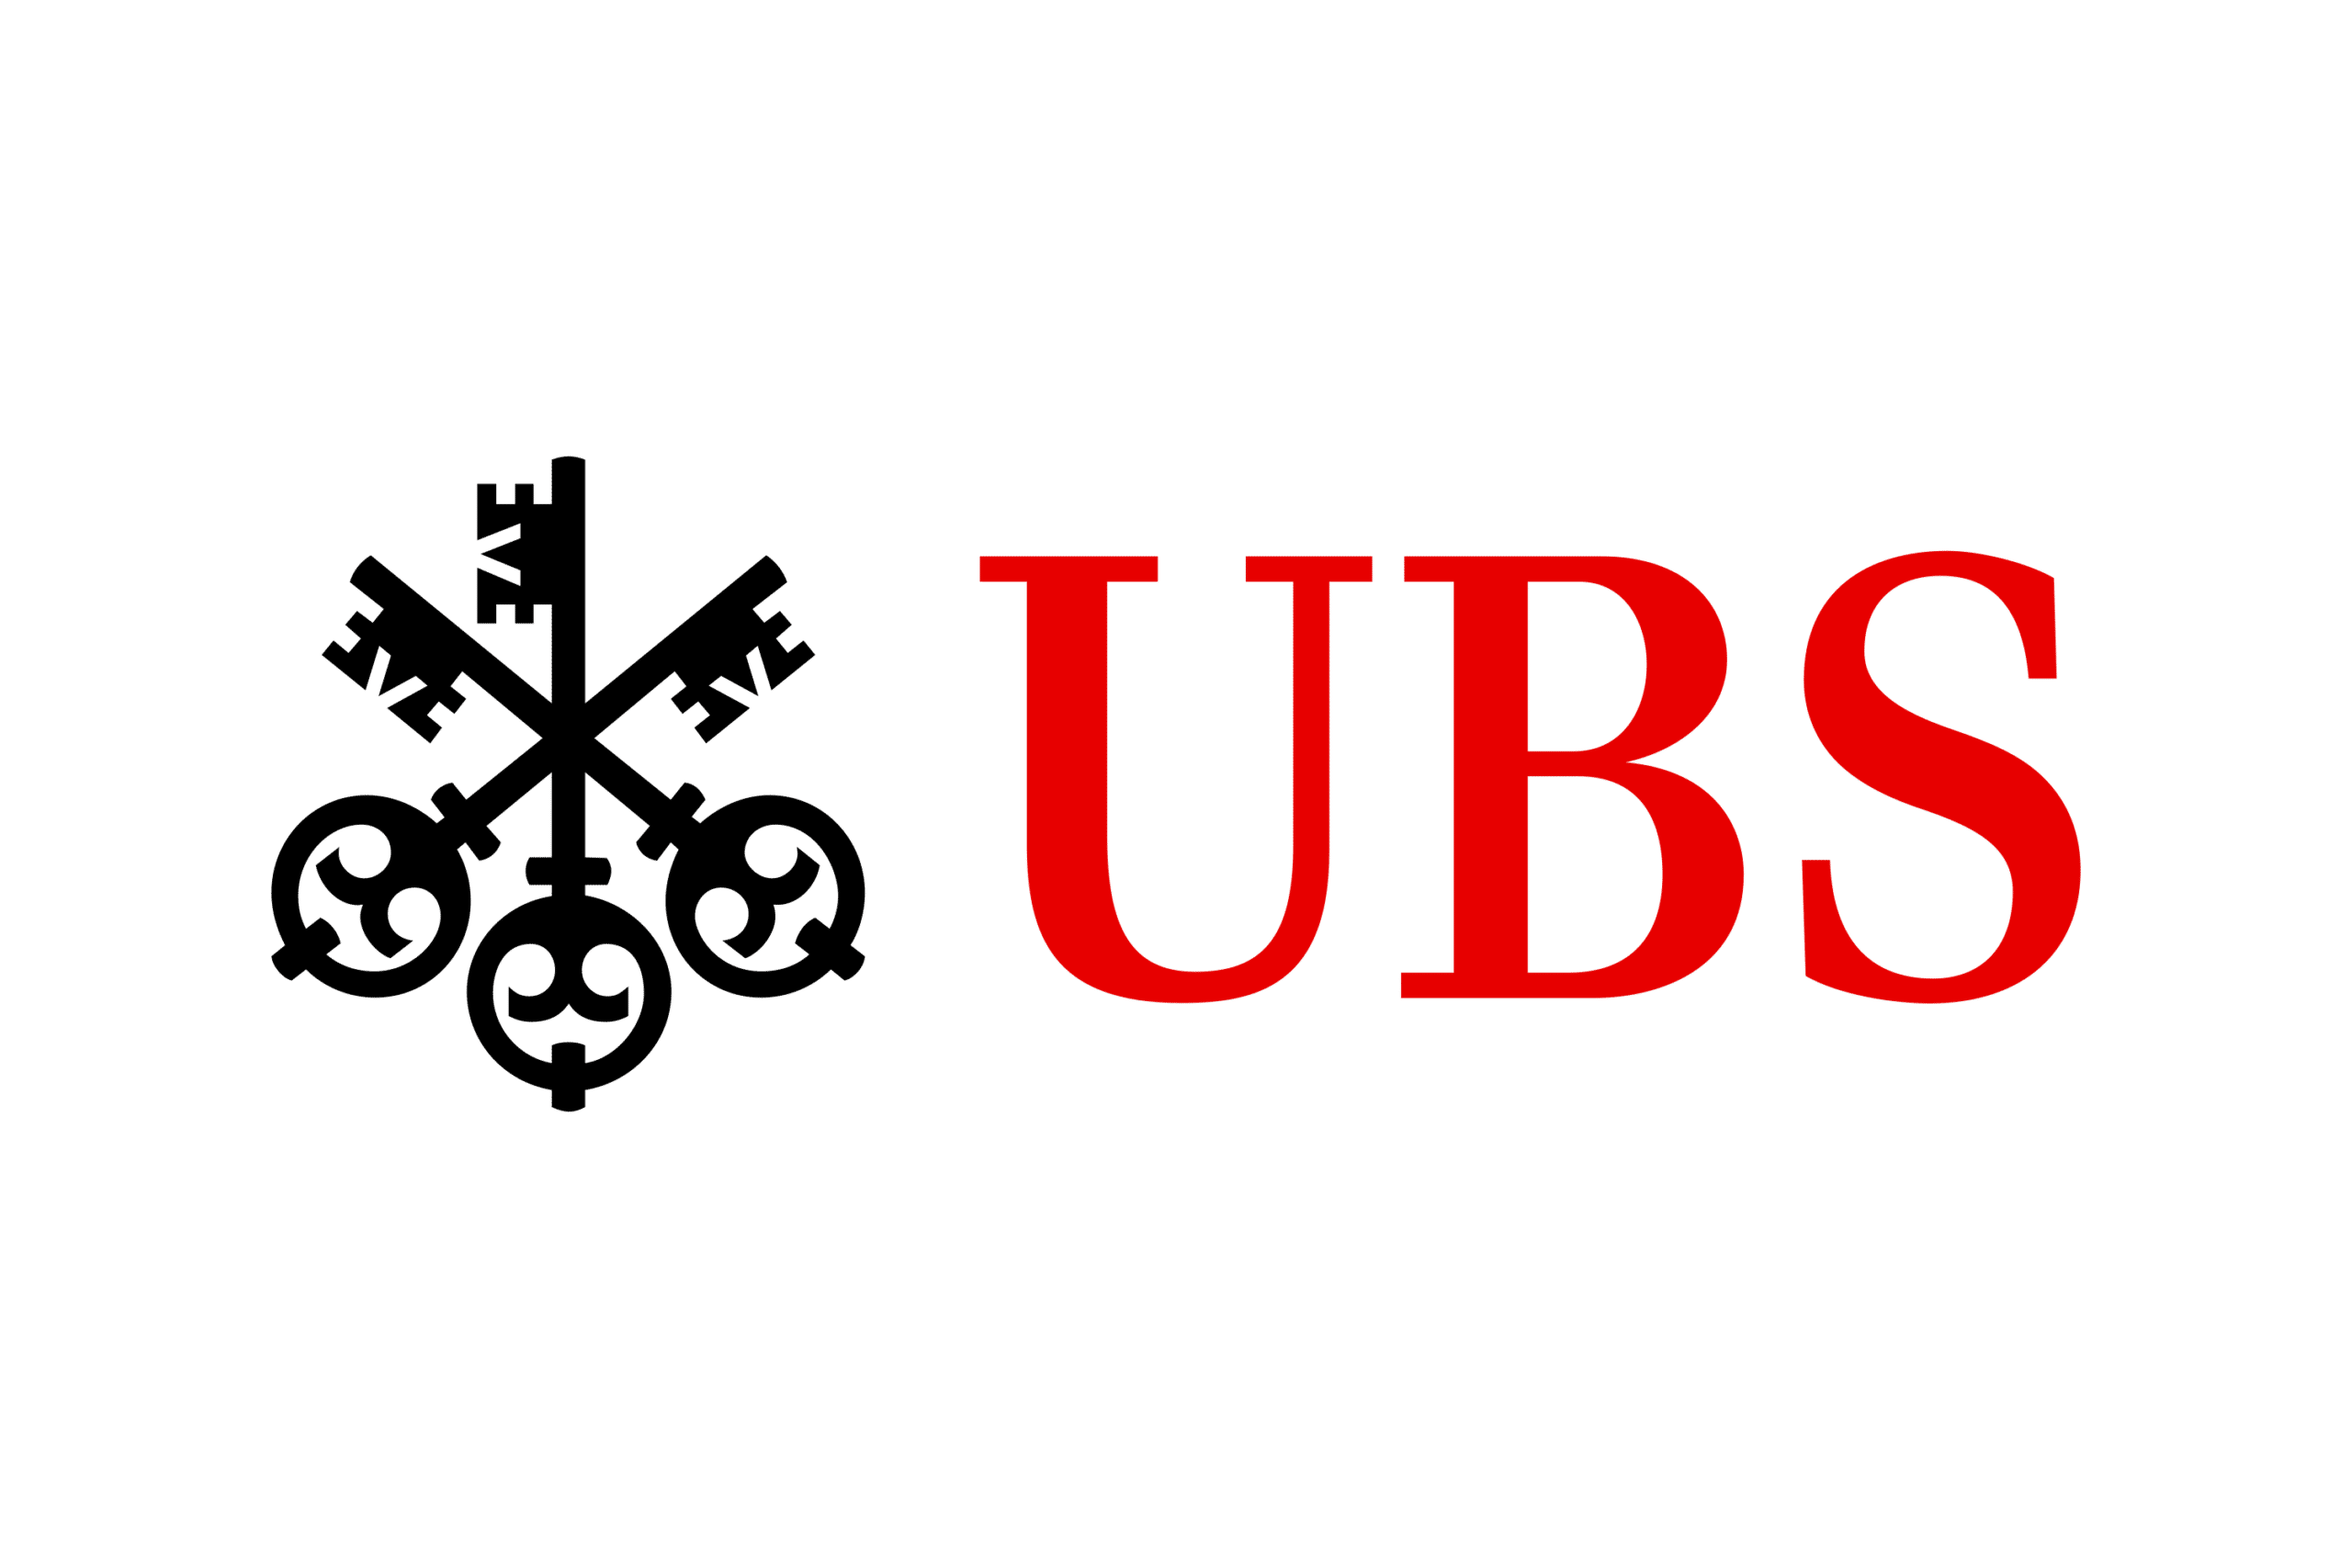 ubs-logo